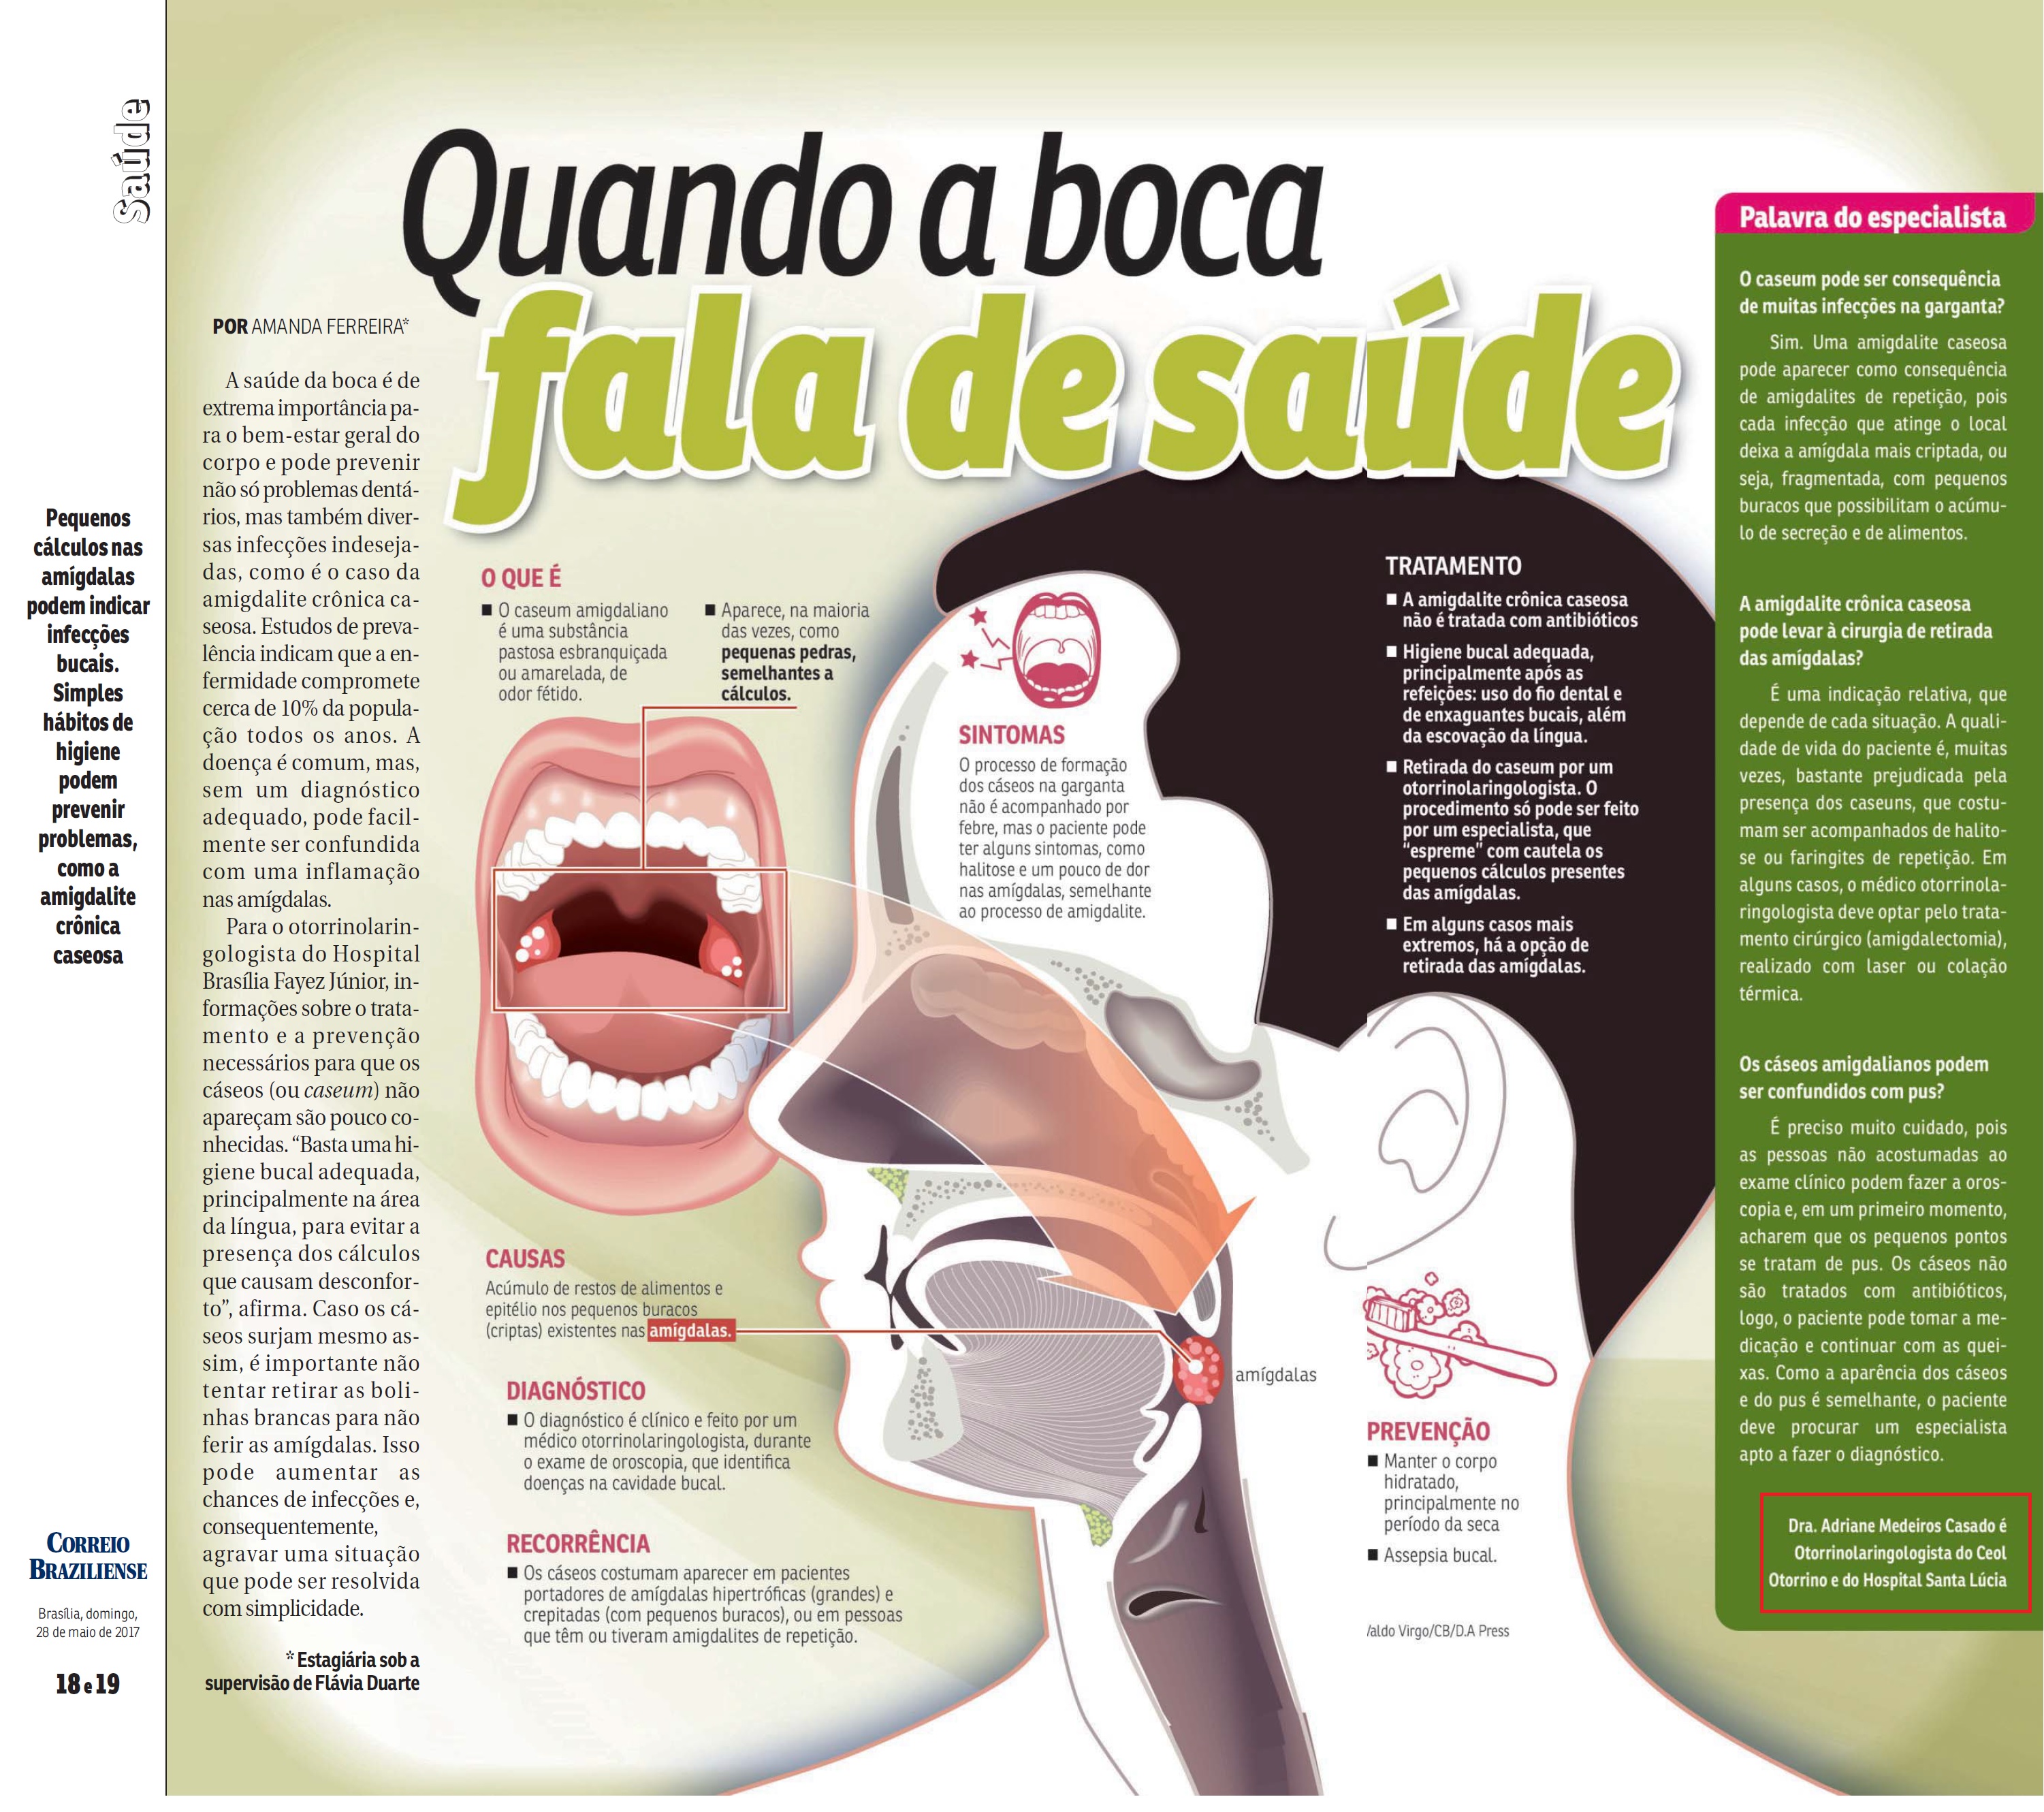 Revista do Correio - Dra. Adriane Medeiros - 28-05-2017